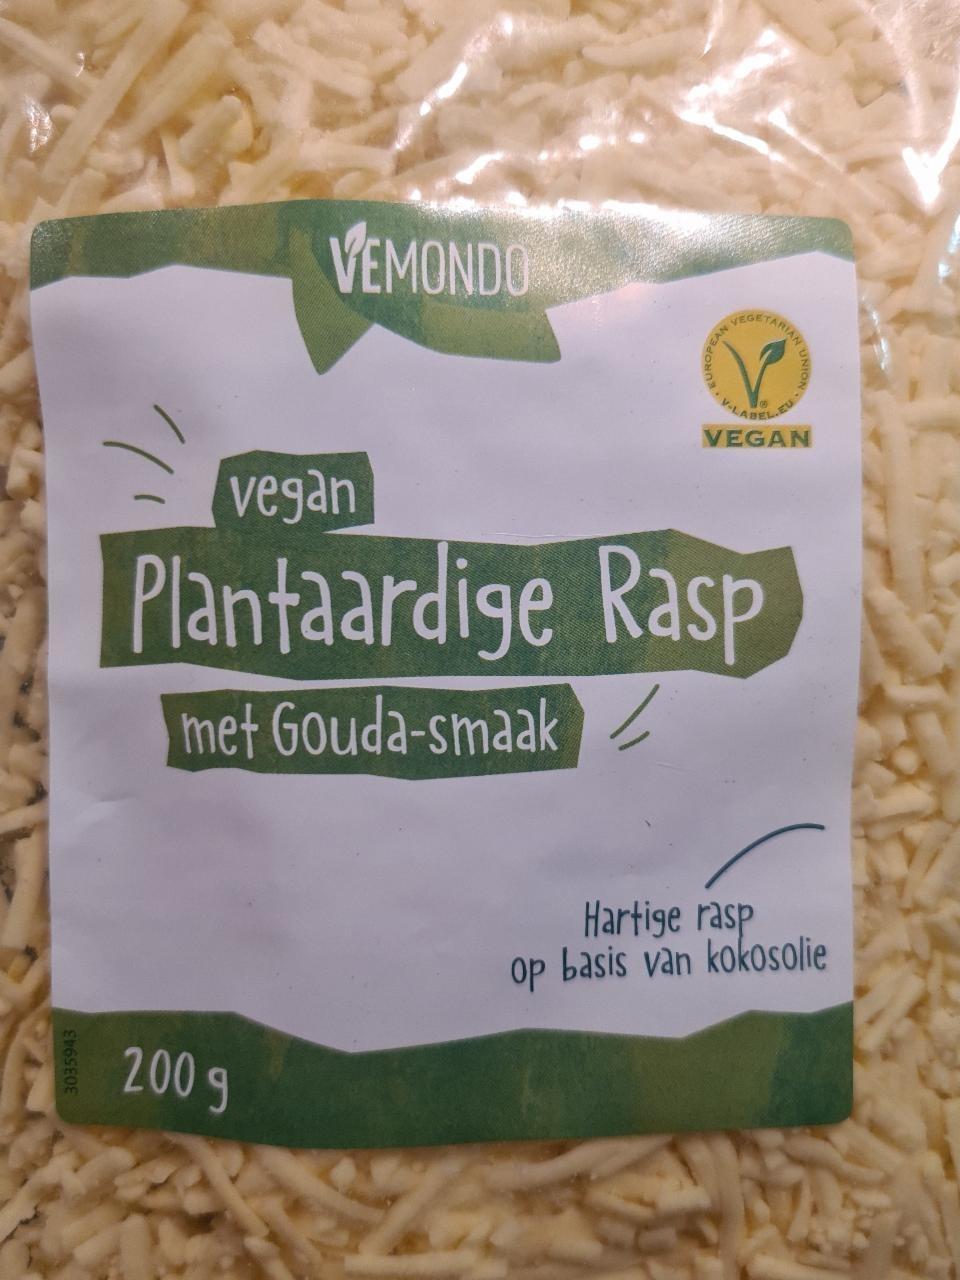 Zdjęcia - Vemondo vegan plantaardige Rasp Met Gouda smaak